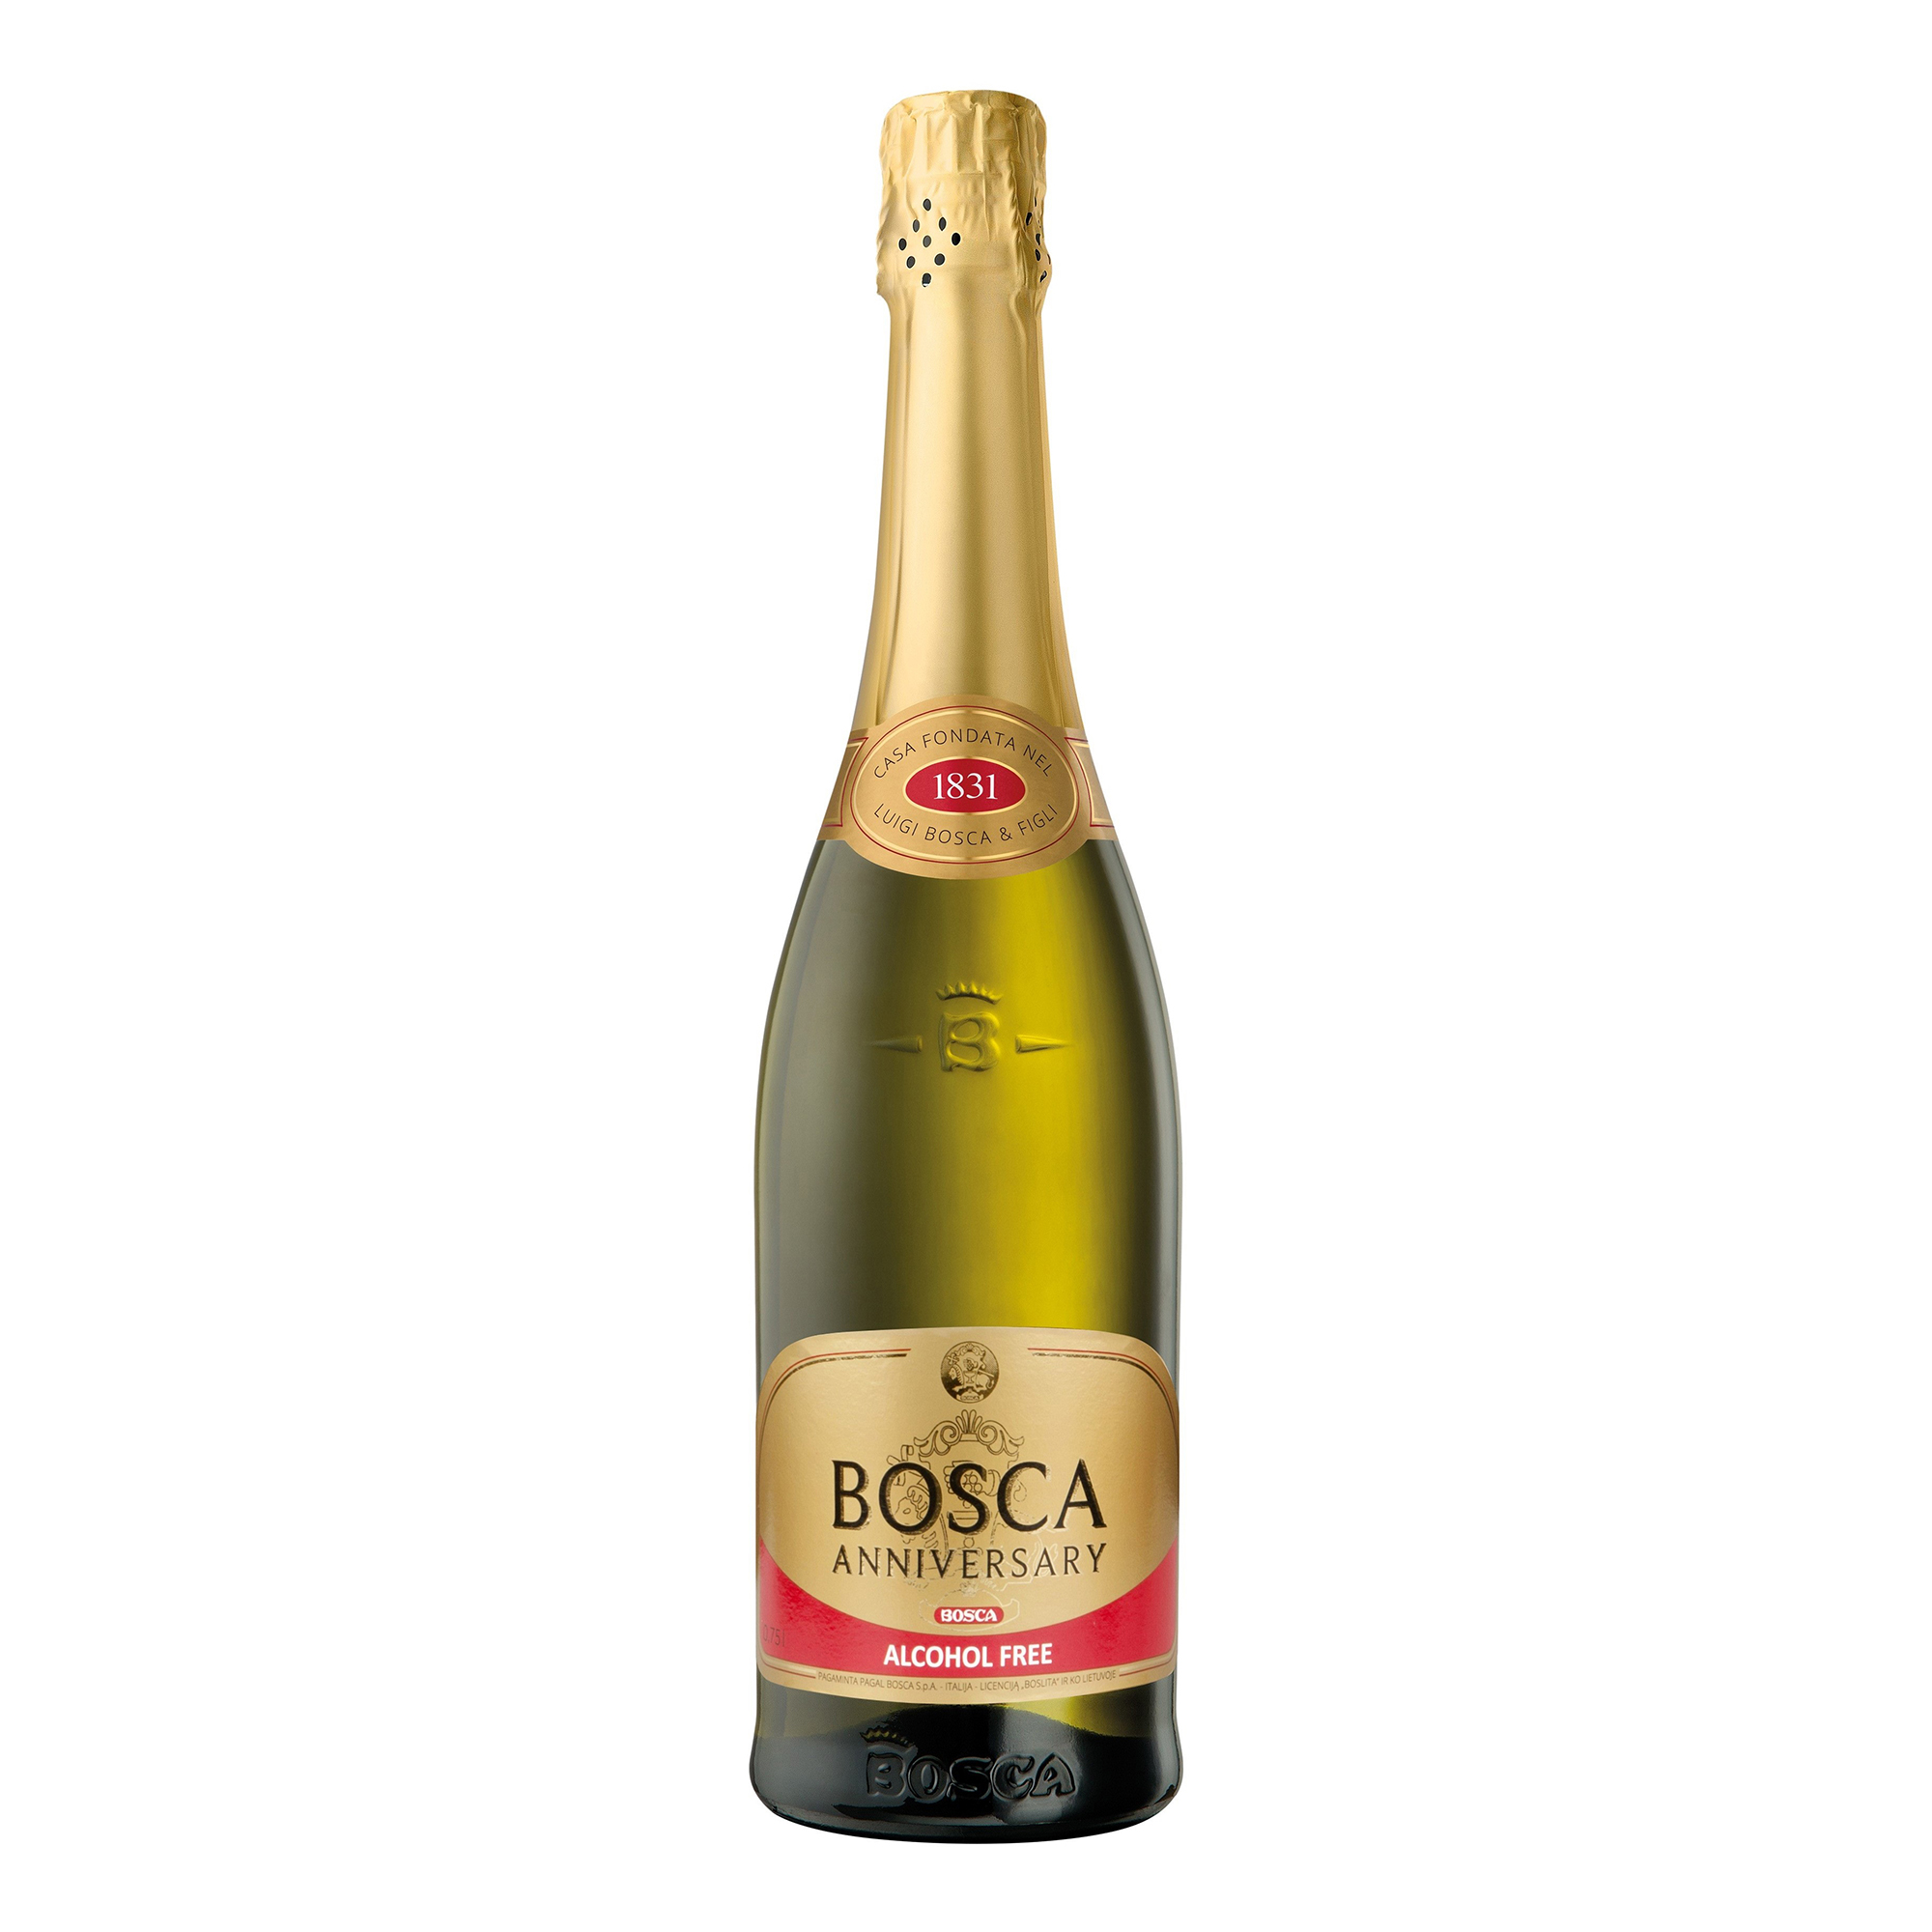 Шампанское золотое отзывы. Bosca Анниверсари. Боска Анниверсари шампанское. Шампанское Боско Голд Лабел. Bosca Anniversary Sweet, Gold Label, 7,5%.